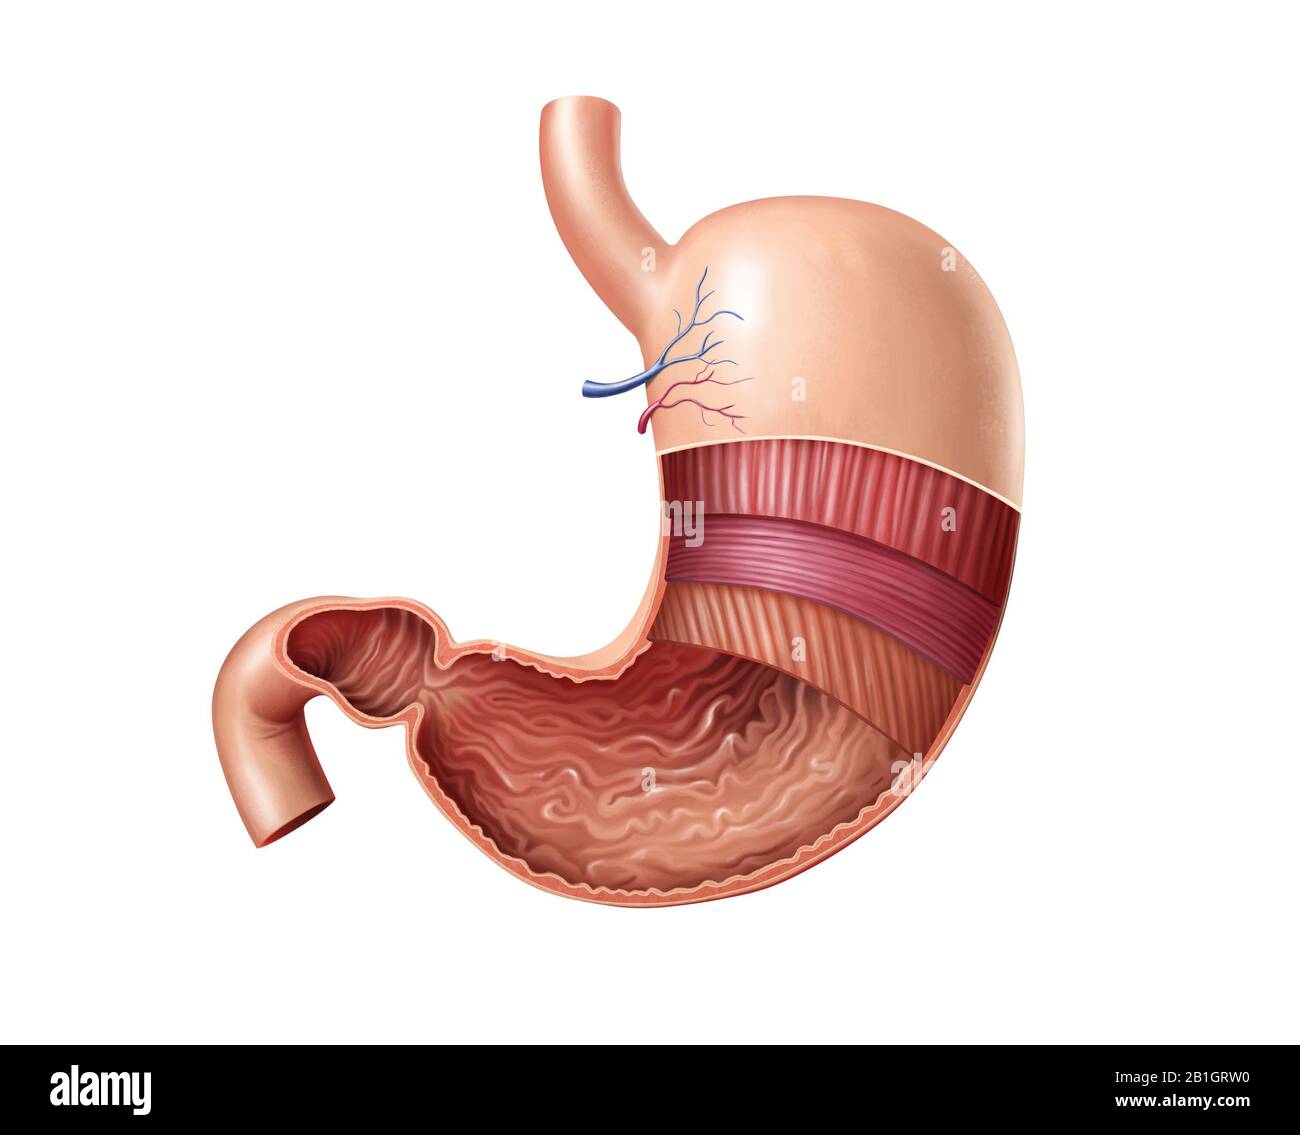 Sezione trasversale dello stomaco umano, che mostra le sue caratteristiche anatomiche. Illustrazione digitale. Foto Stock